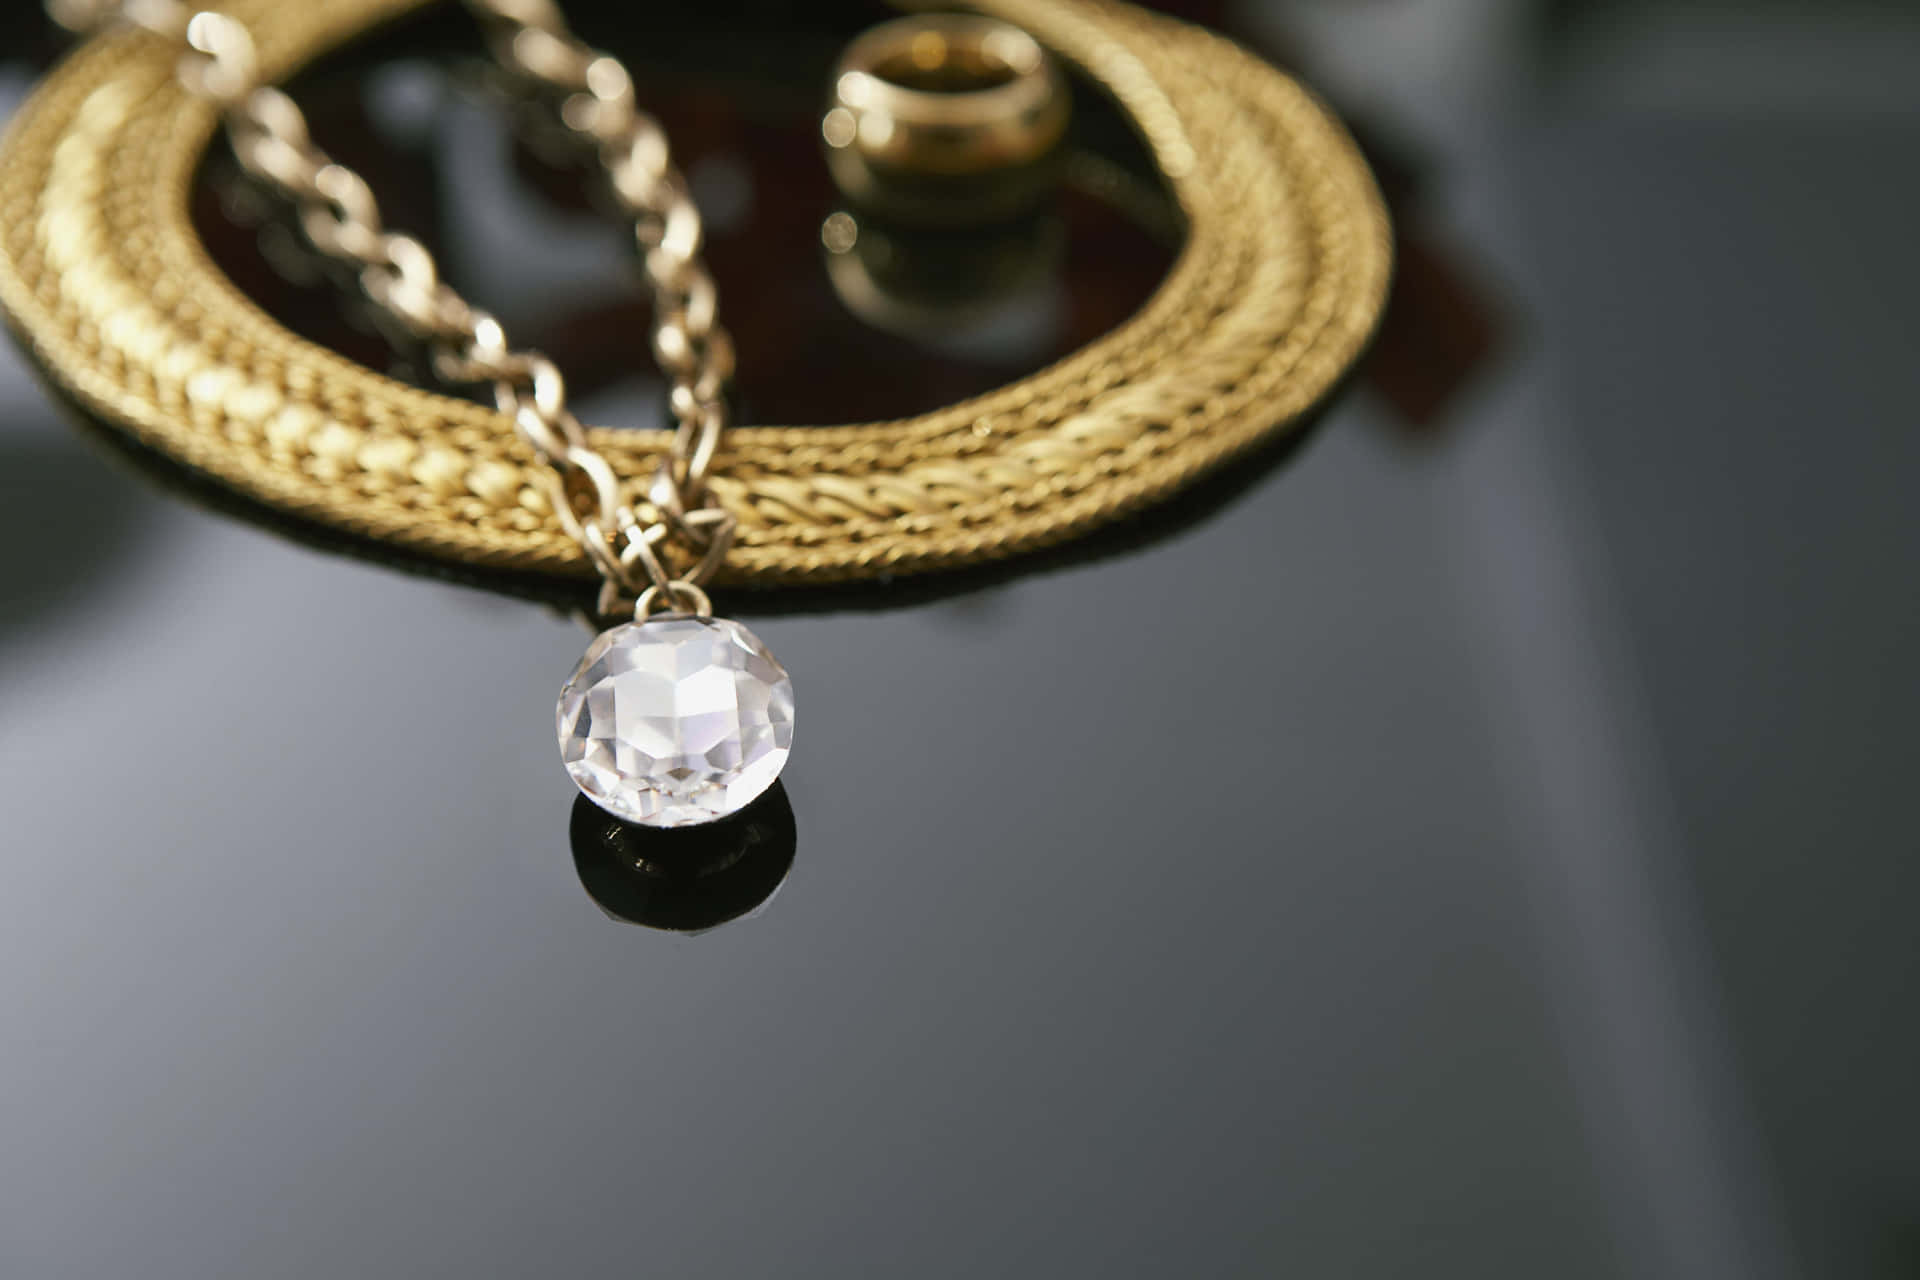 En glitrende diamant indfanget i en guldring, der afføder en følelse af luksuriøs elegance. Wallpaper